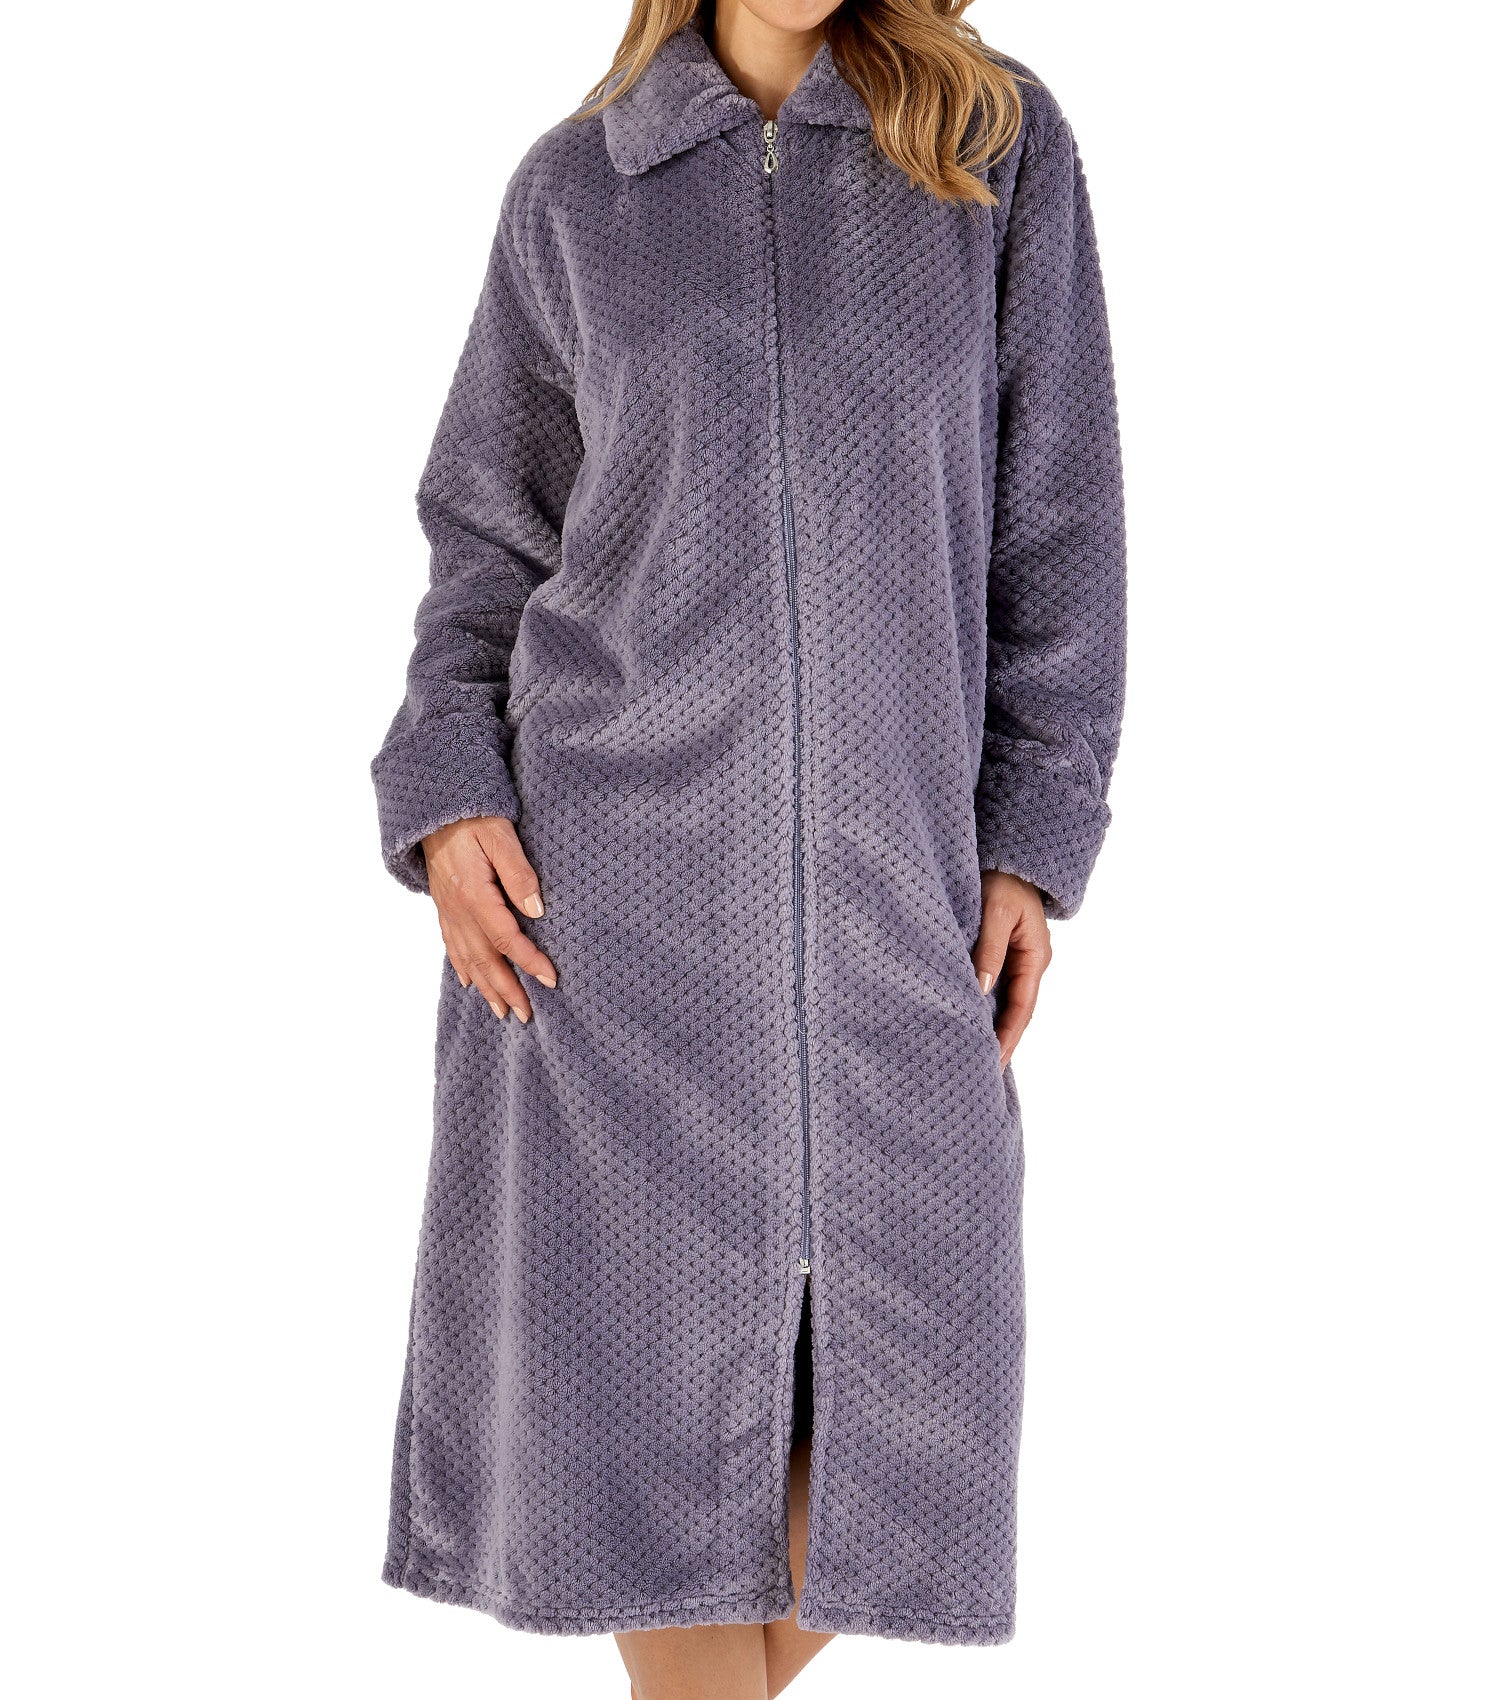 Child's Fleece Zip Up Dressing Gowns - Donann